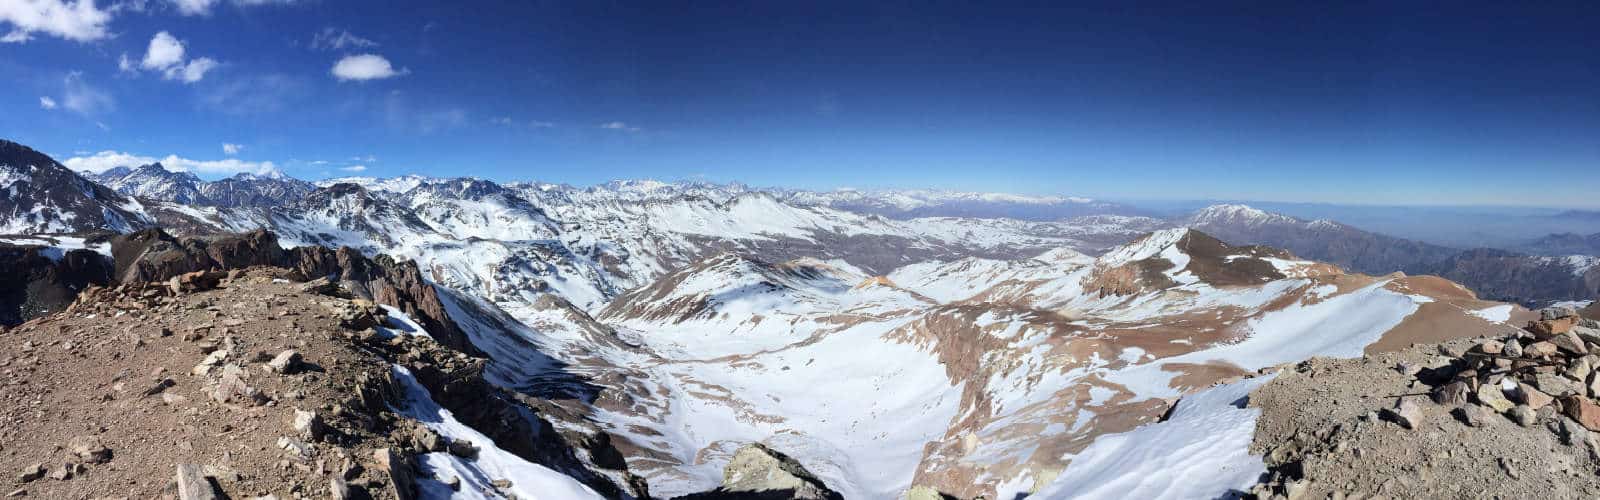 Una vista central desde la cima de una montaña.